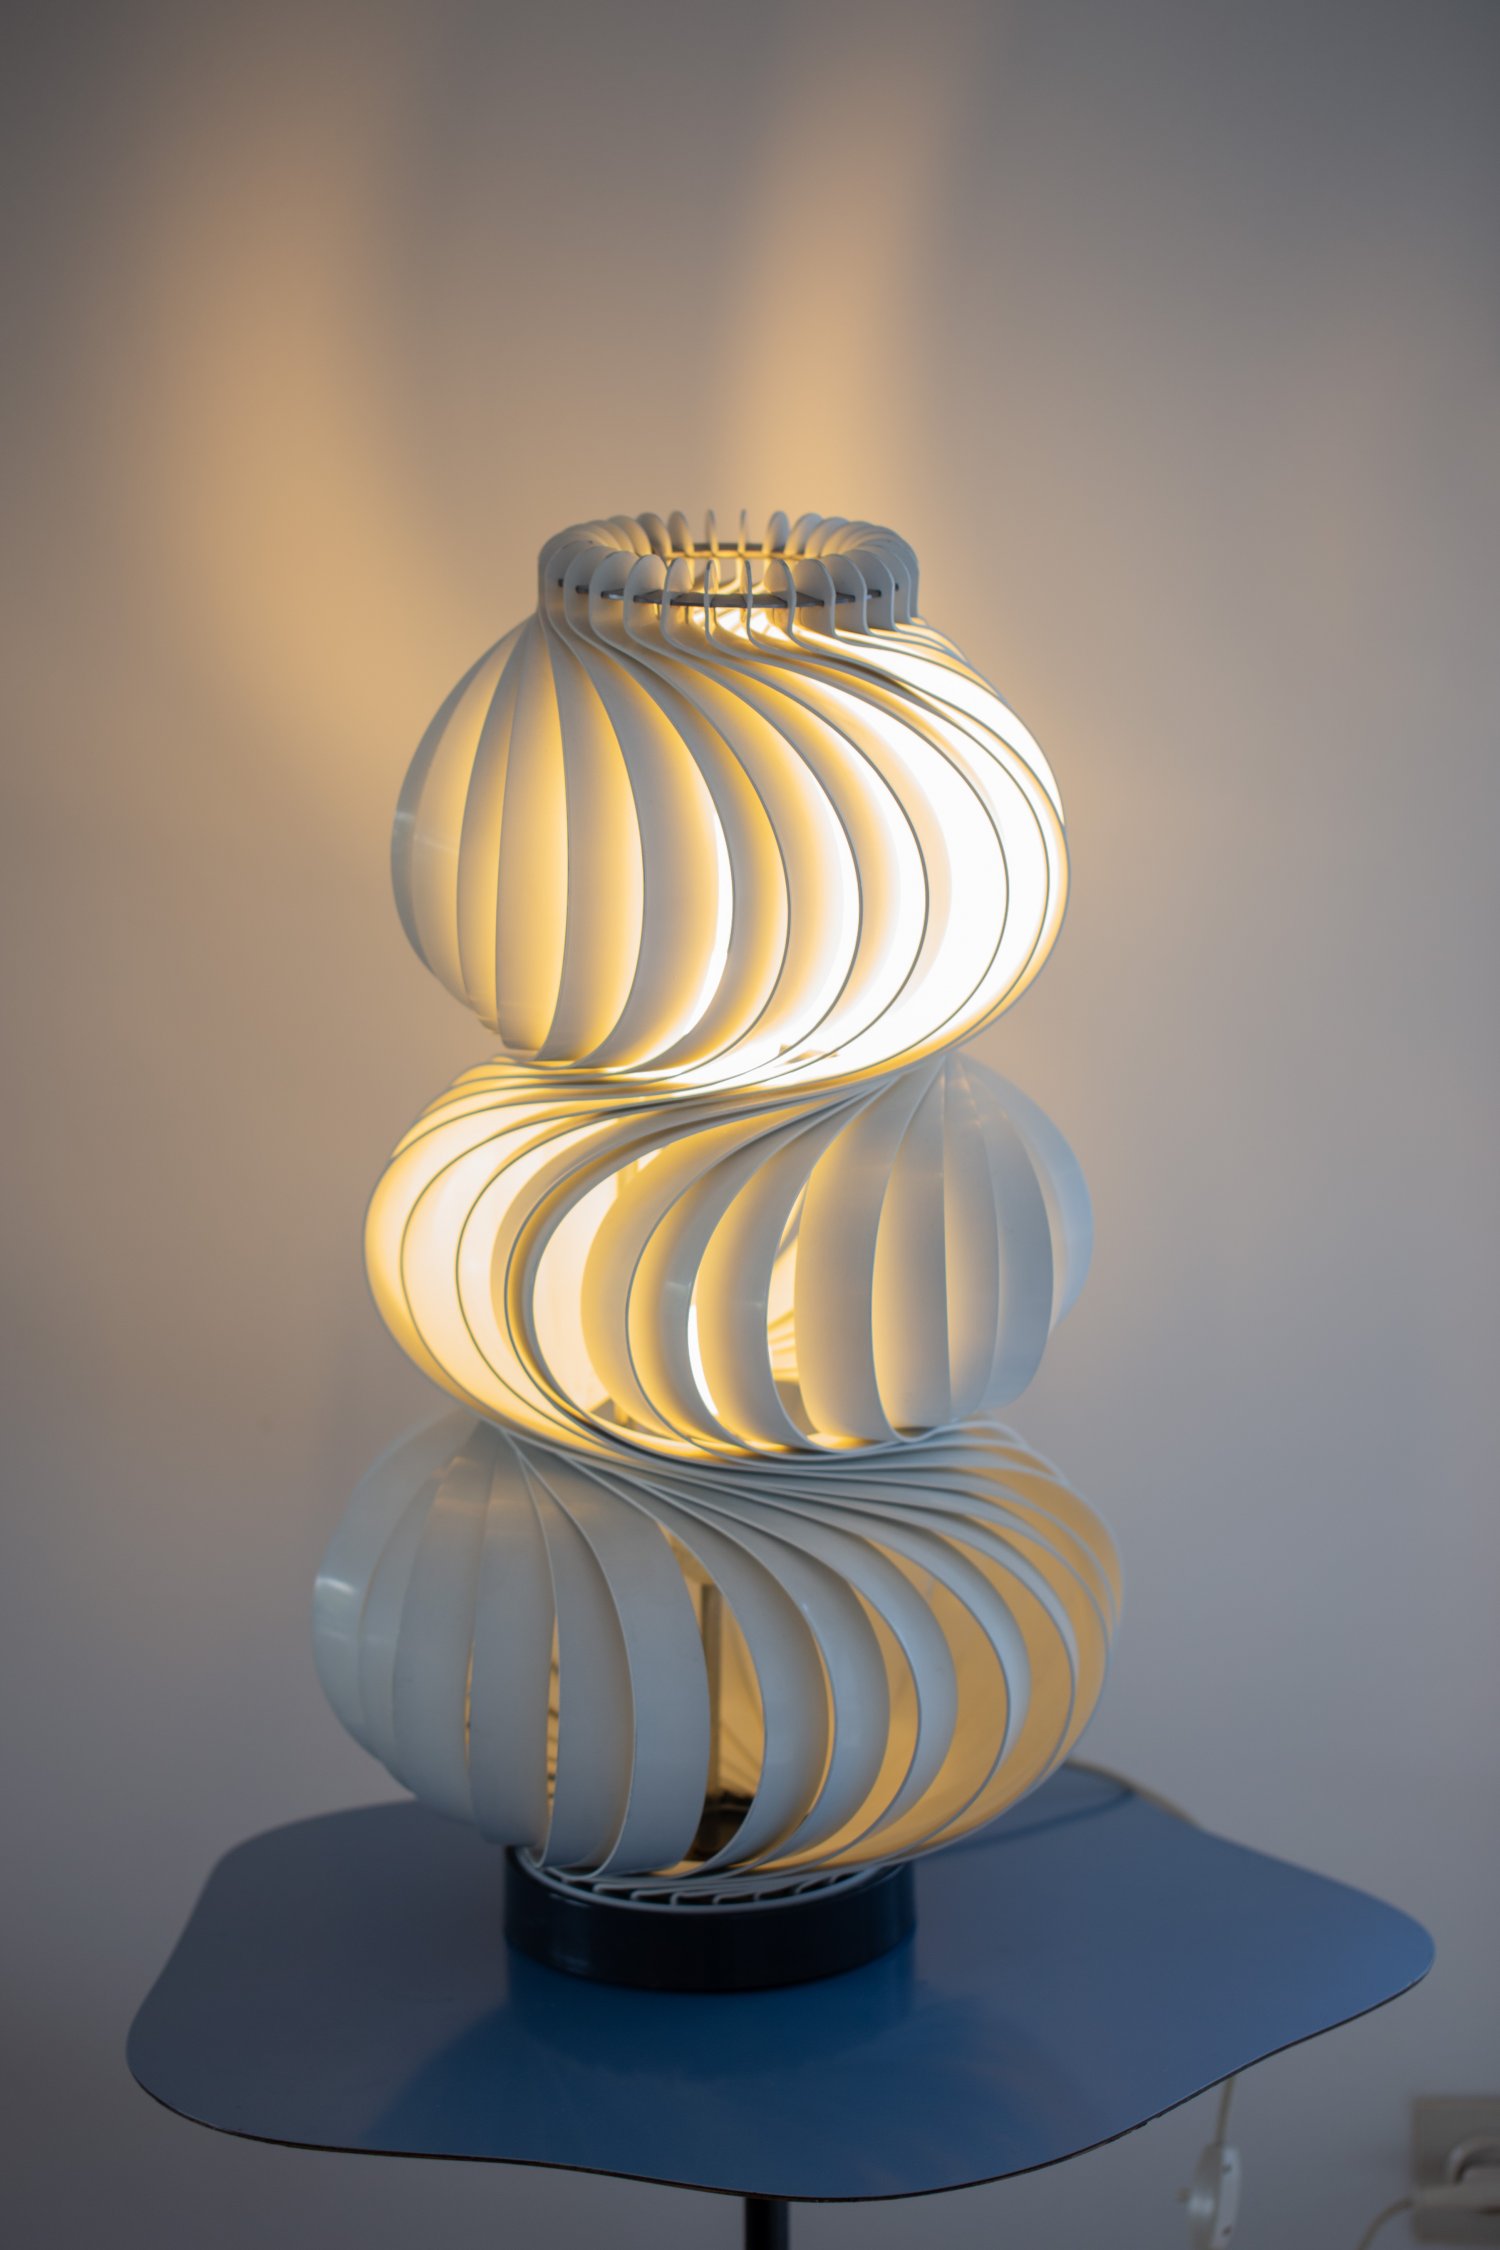 Medusa lamp by Olaf von Bohr